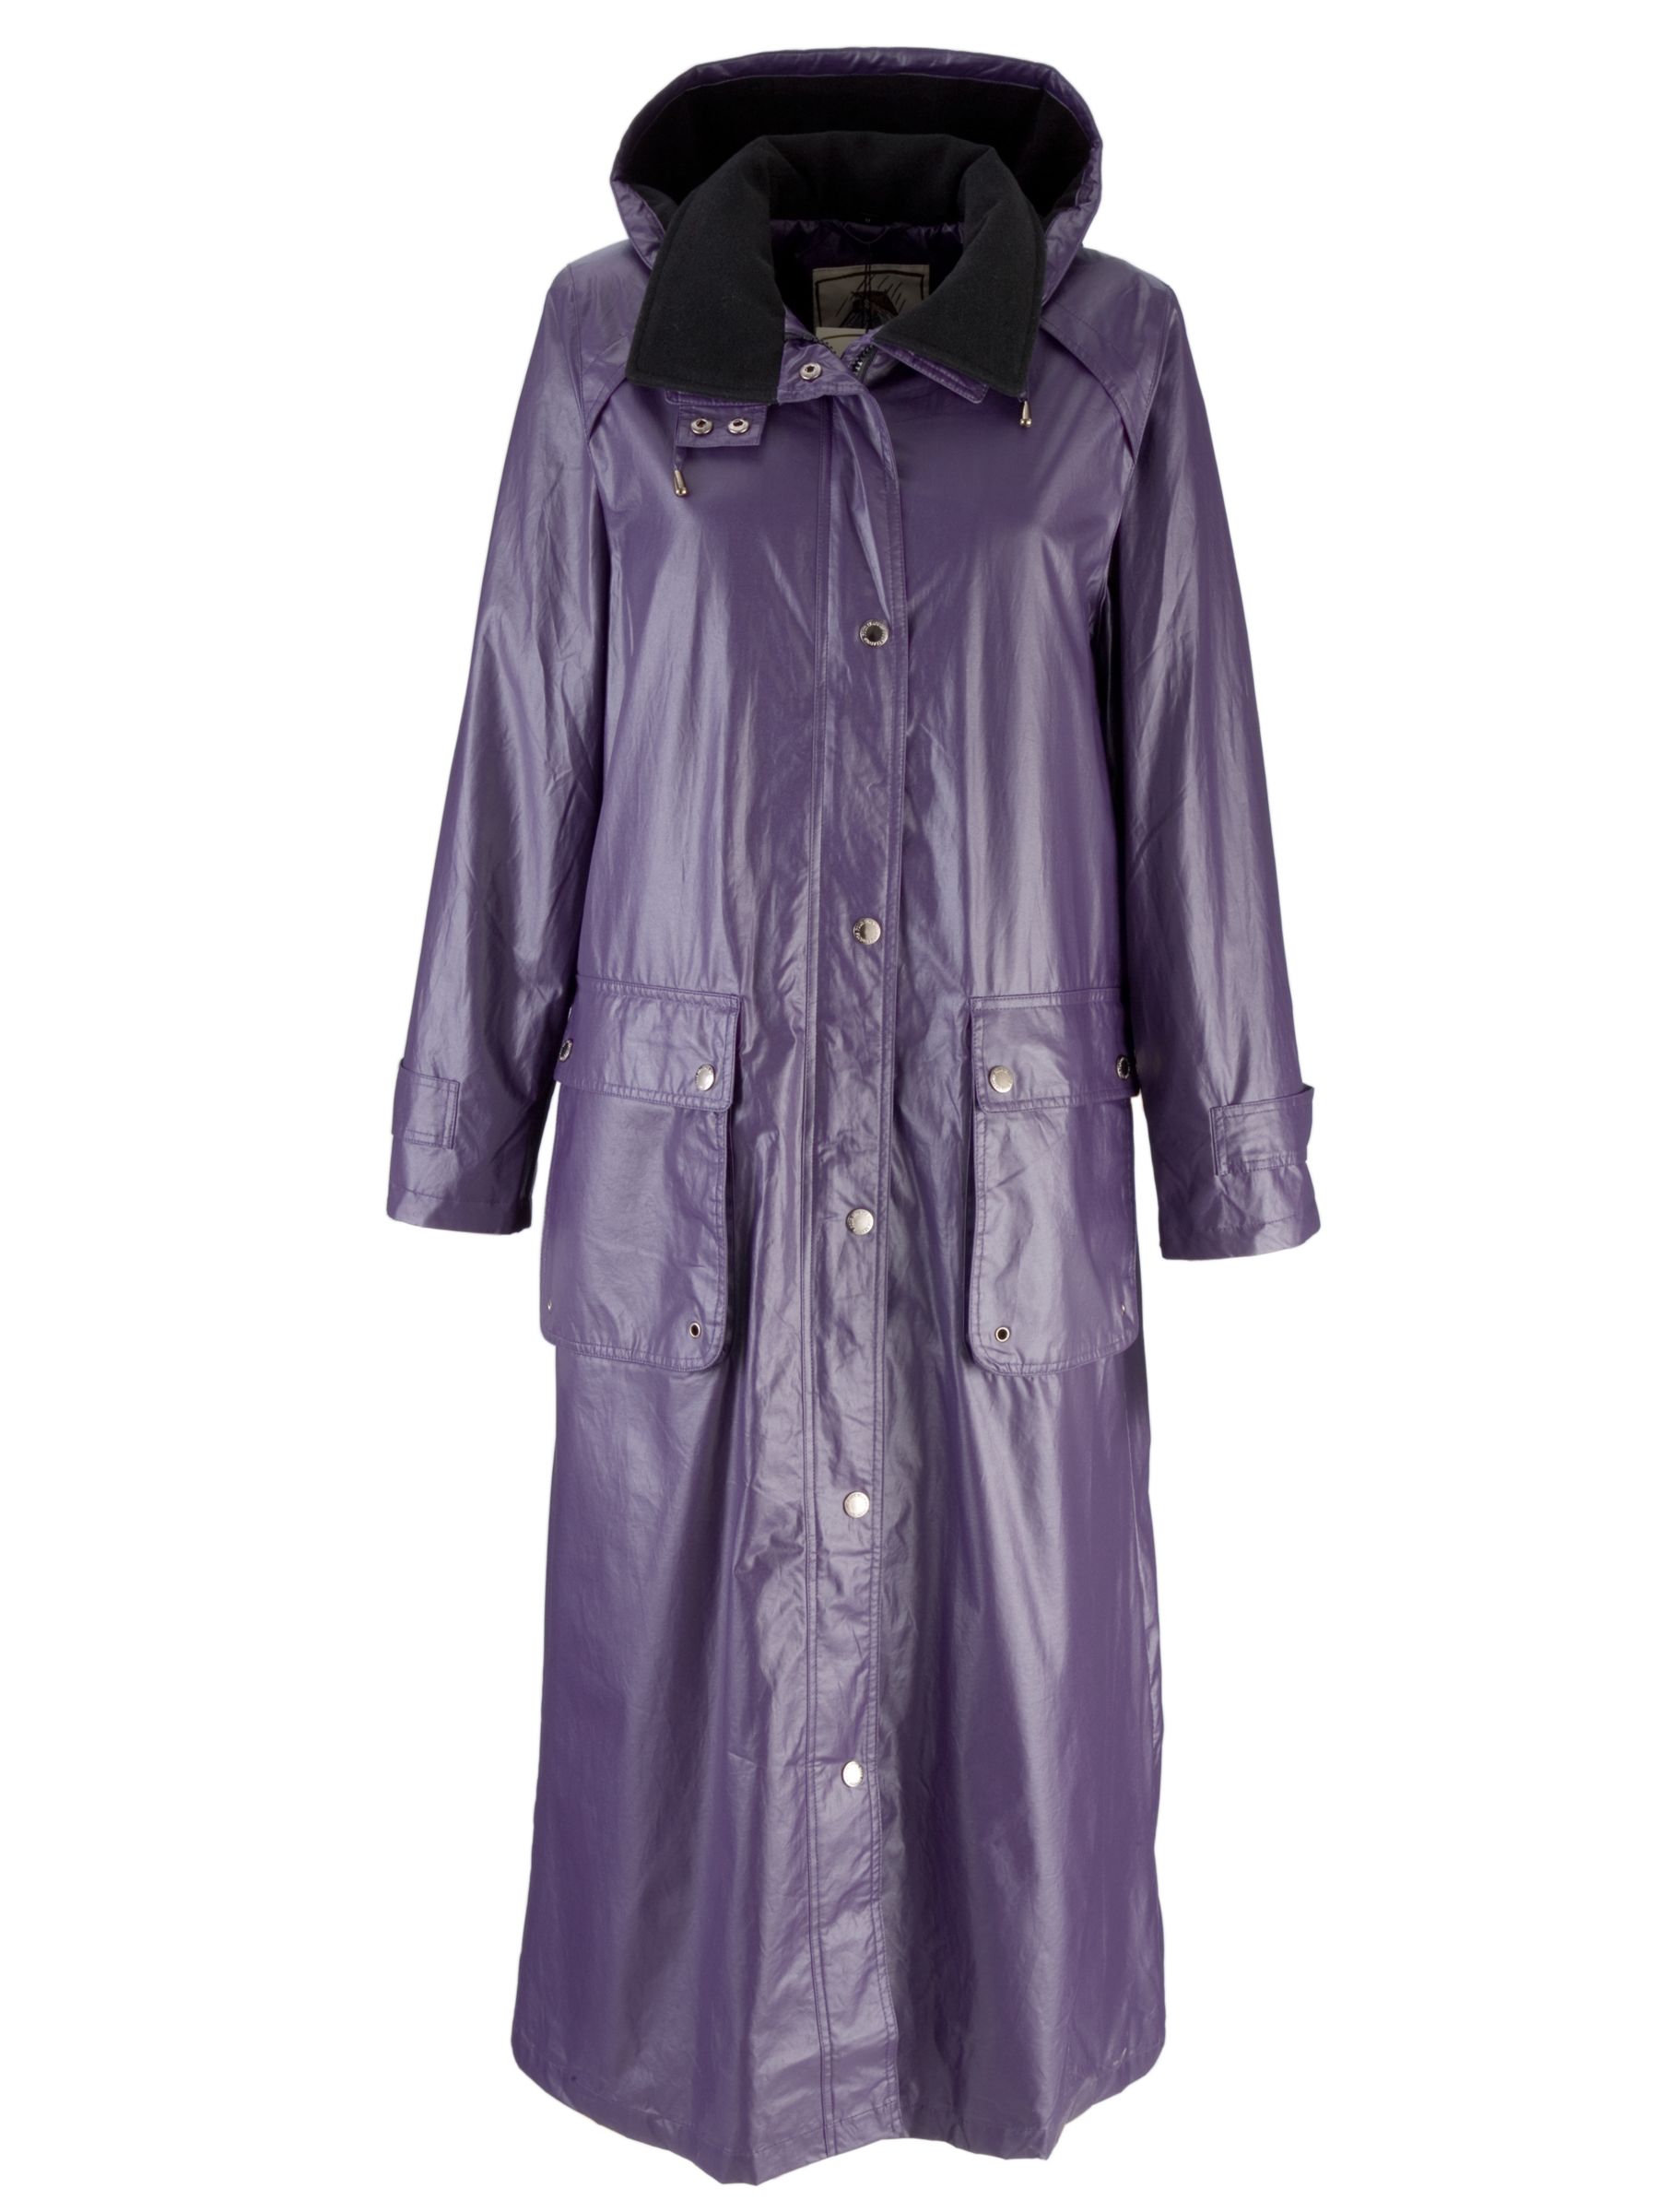 Four Seasons Hanging Wax Coat, Purple at John Lewis